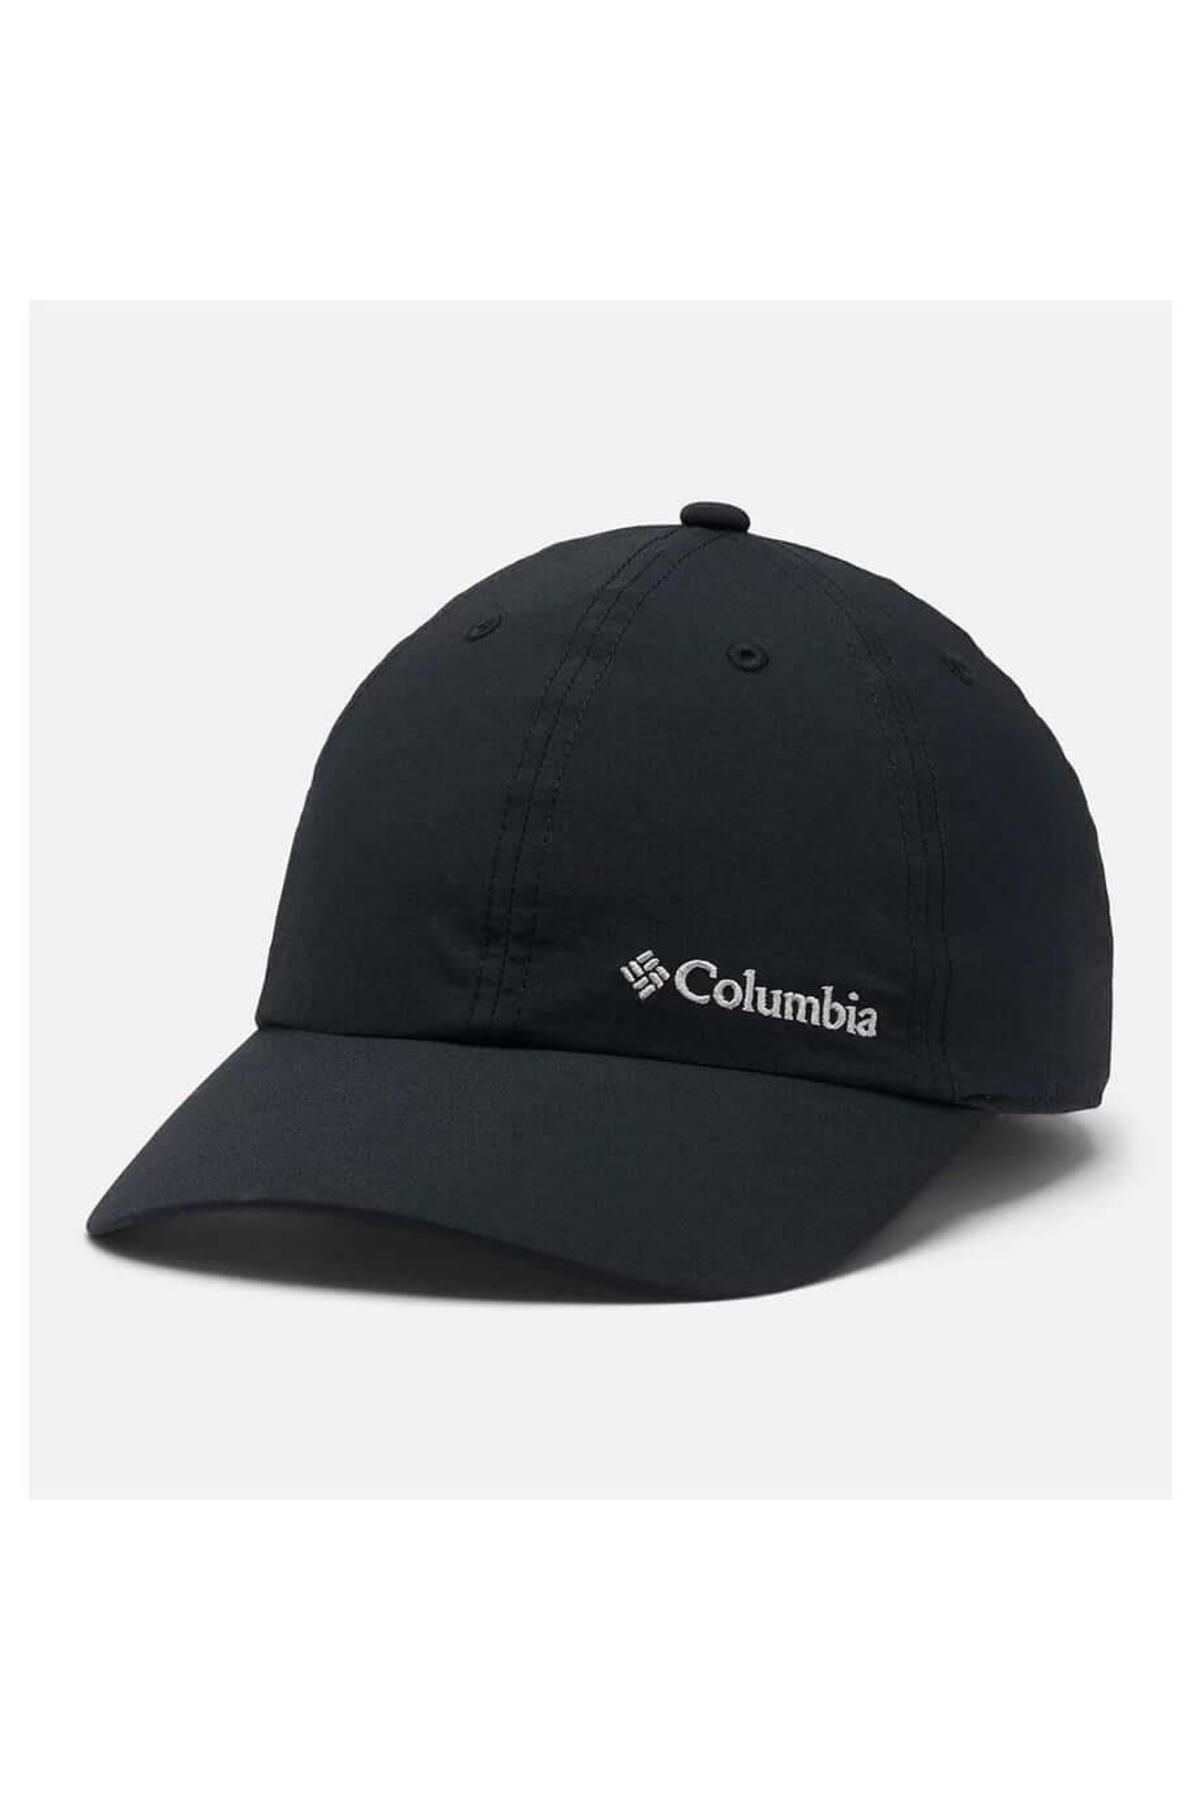 Columbia Tech Shade II Cap Unisex Hat Xu0155